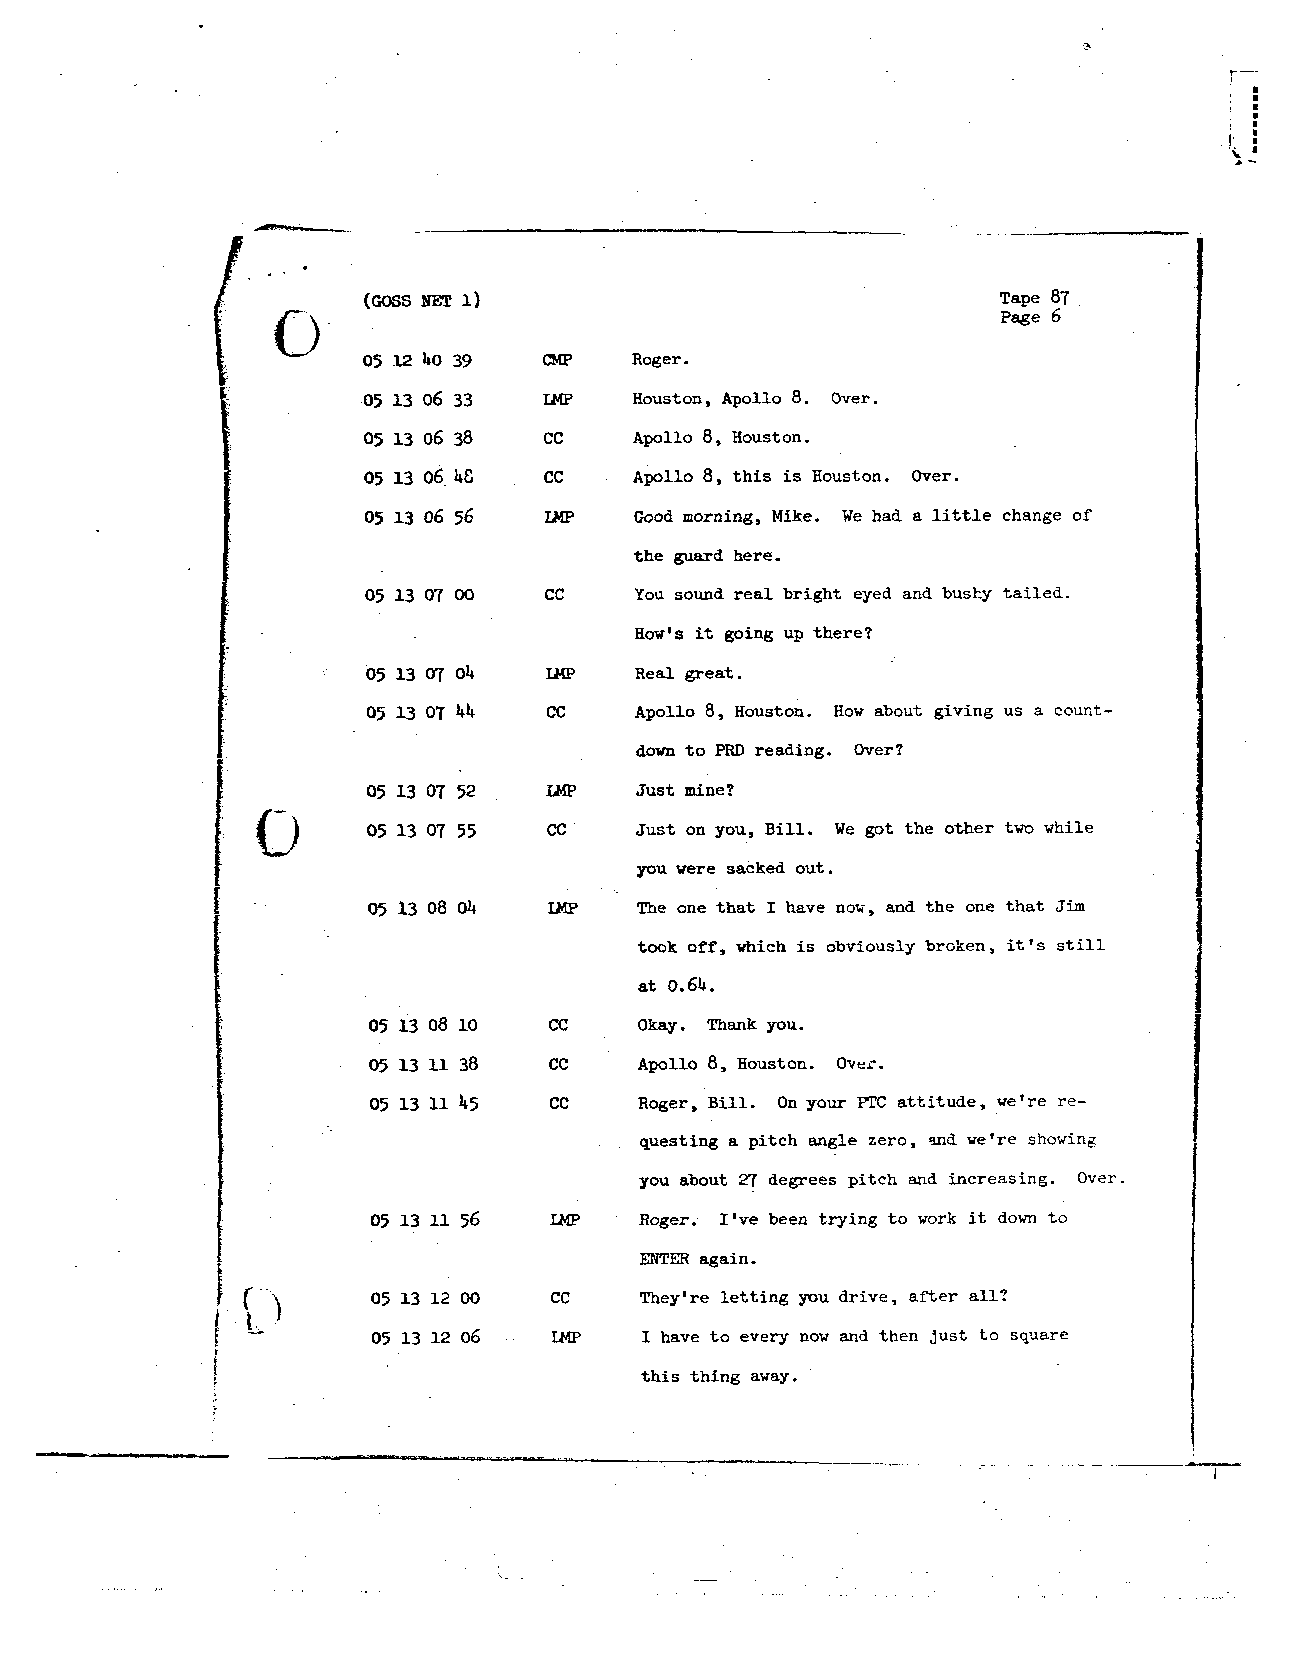 Page 718 of Apollo 8’s original transcript